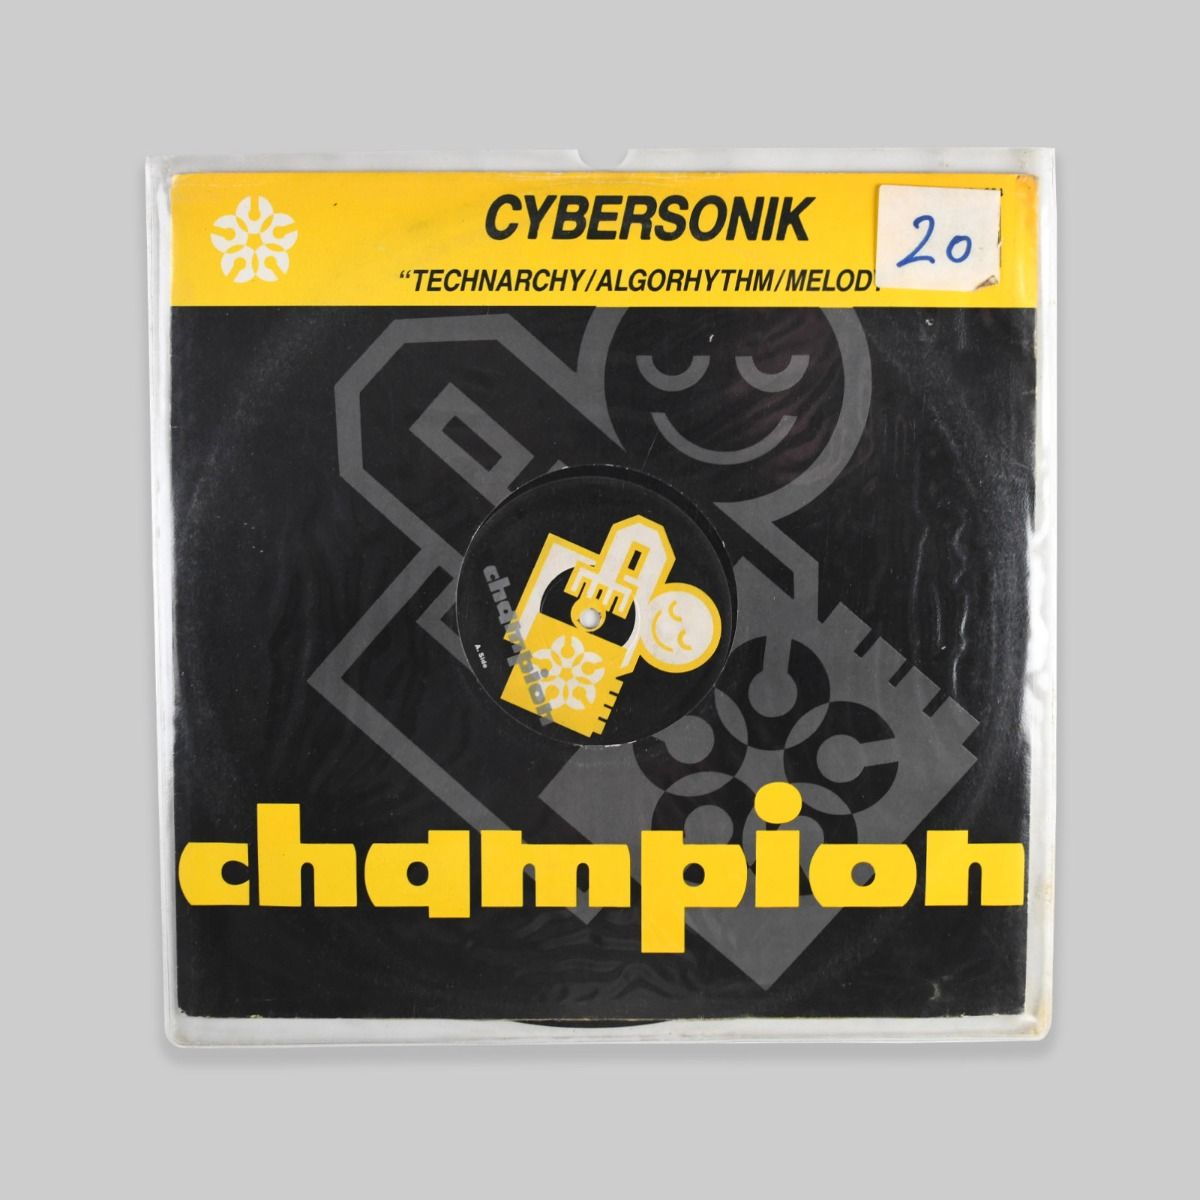 Cybersonik – Technarchy 12"